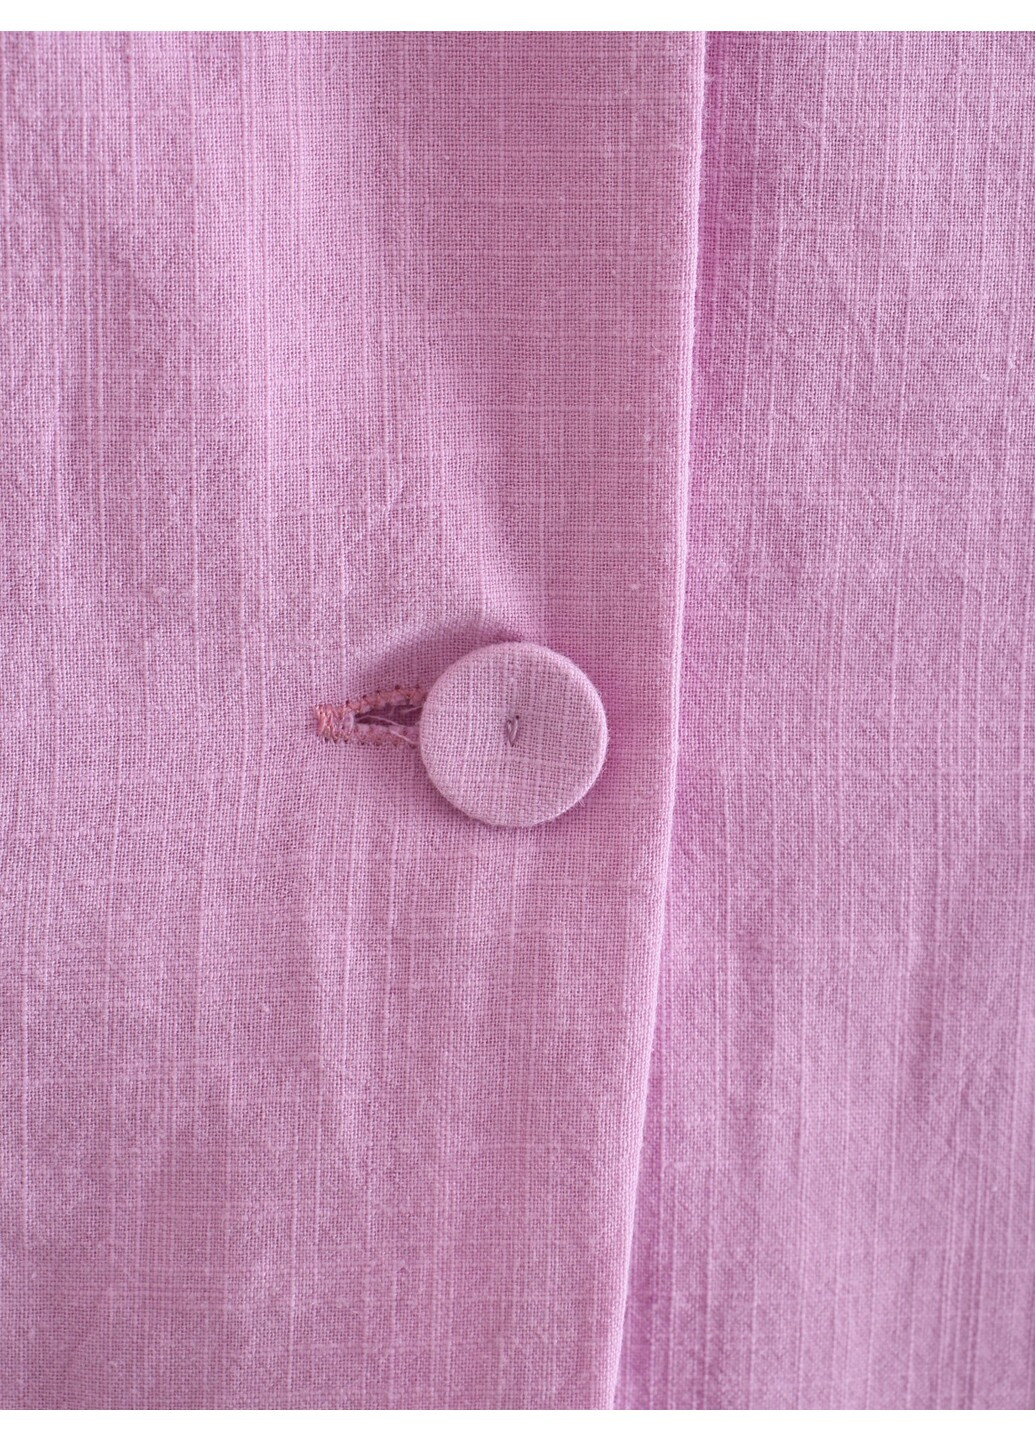 Розовый женский блейзер женский с накладными карманами glamor Berni Fashion однотонный - демисезонный